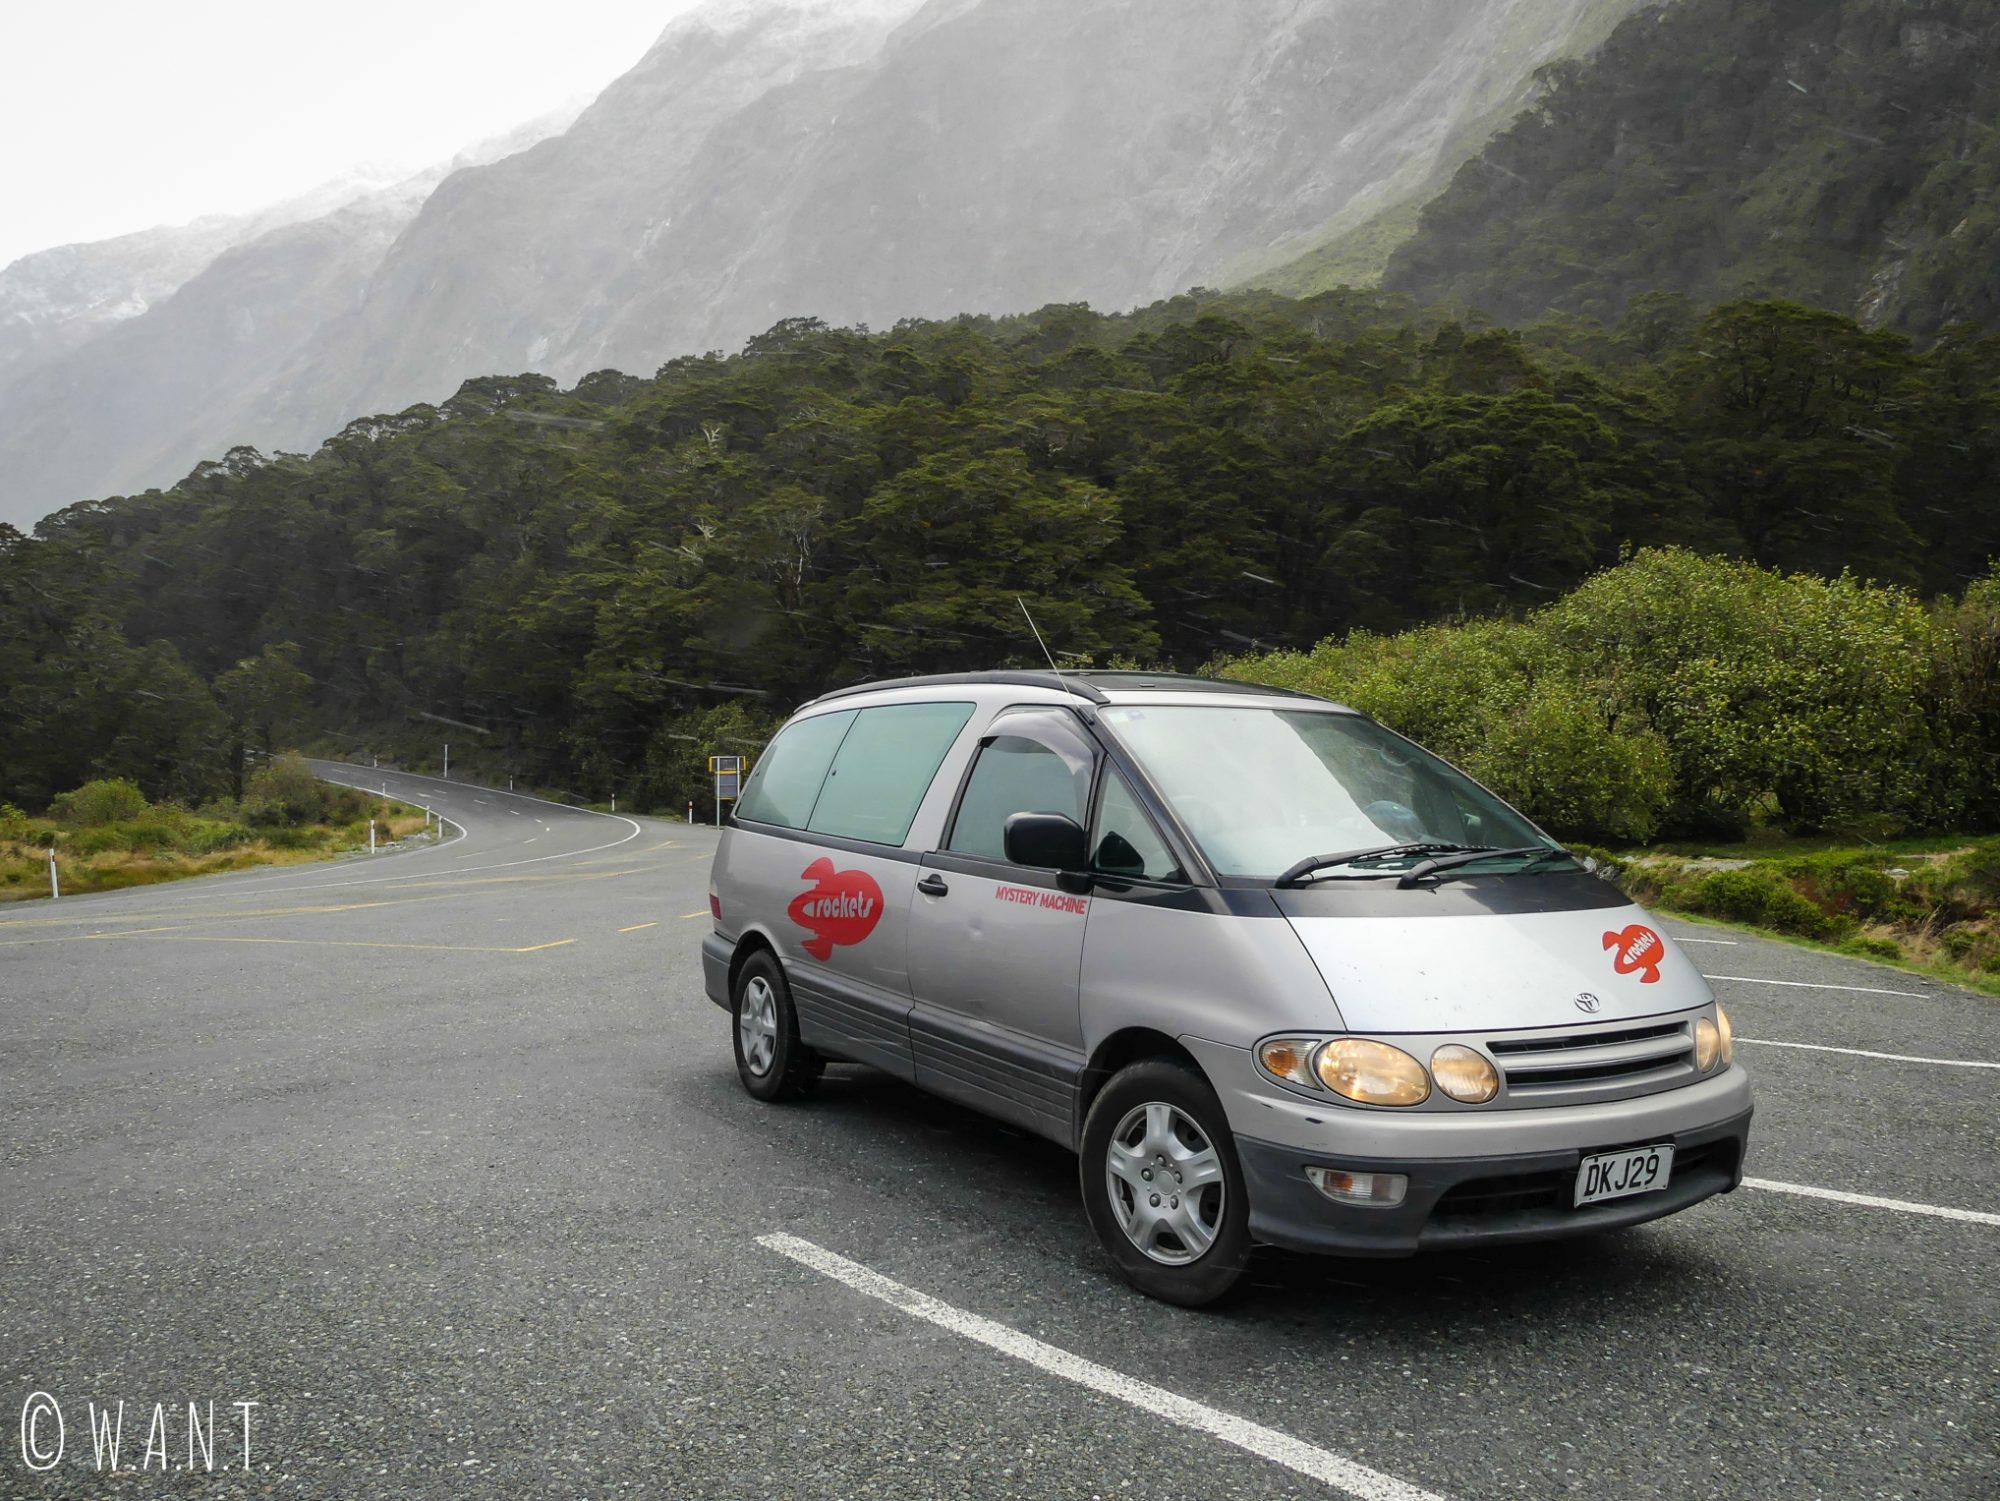 Notre van Spaceship, utilisé lors de notre road trip en Nouvelle-Zélande